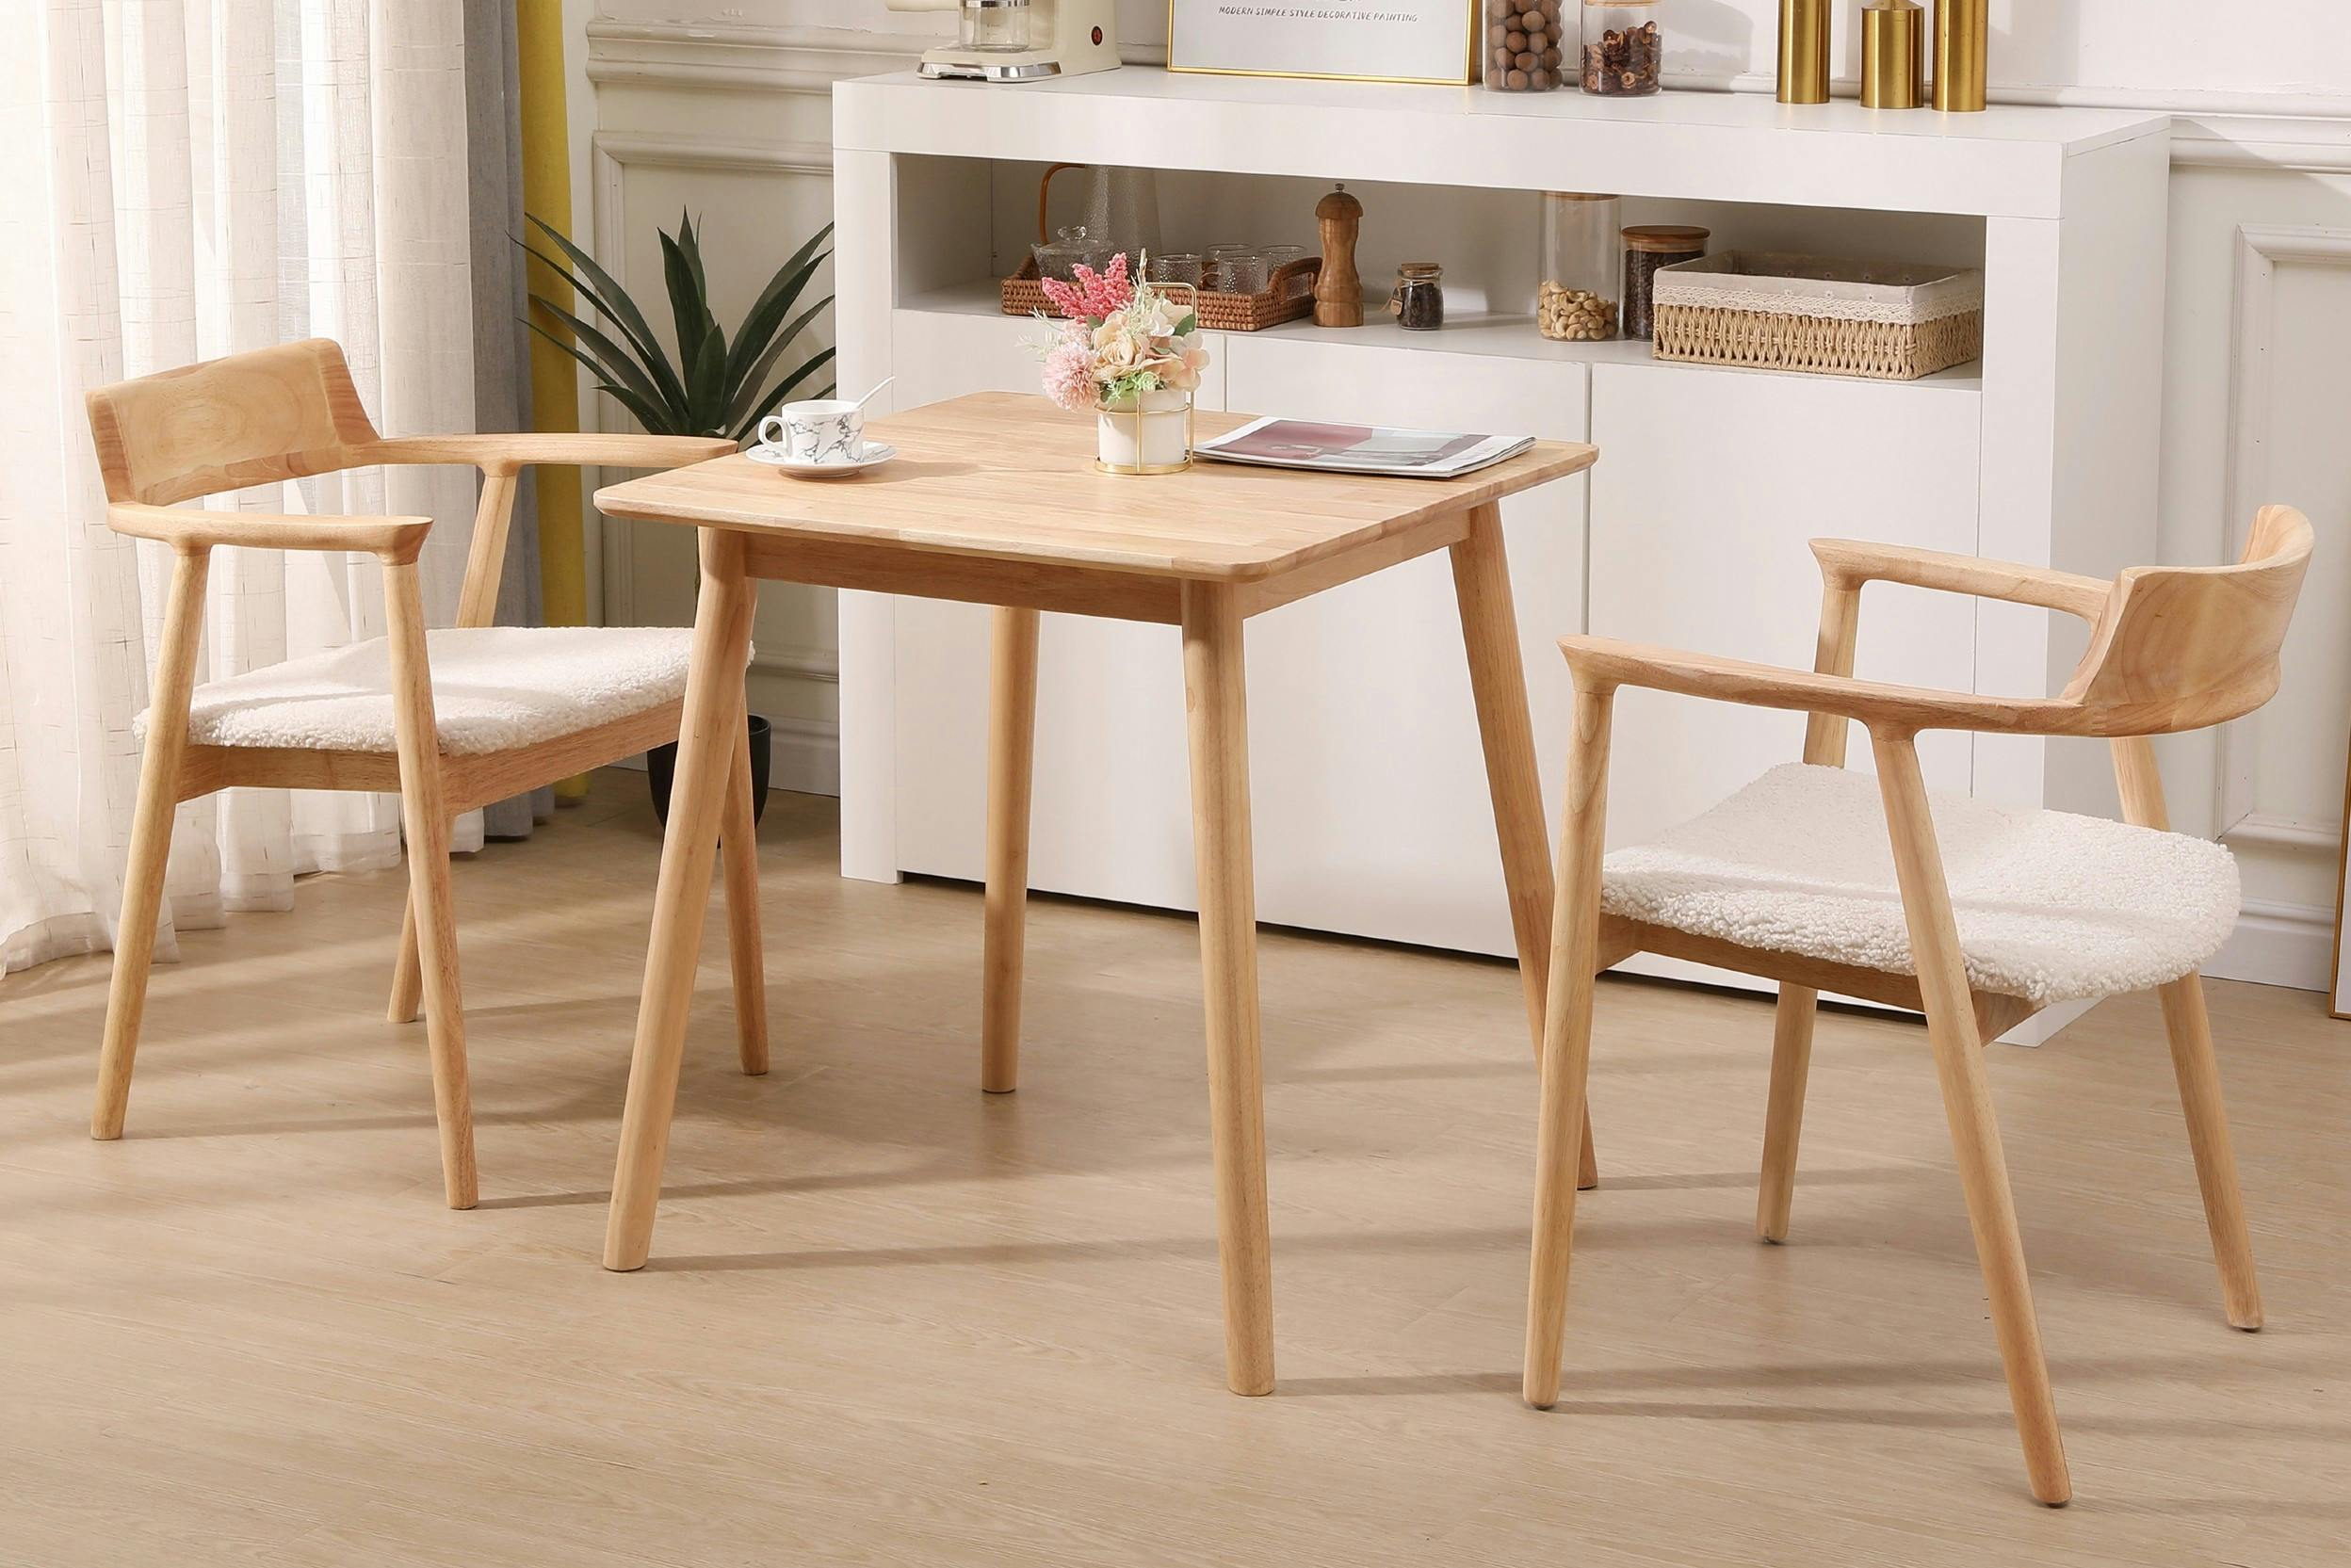 Quadratischer Esstisch aus Holz mit 2 Esszimmerstühlen im skandinavischen Design